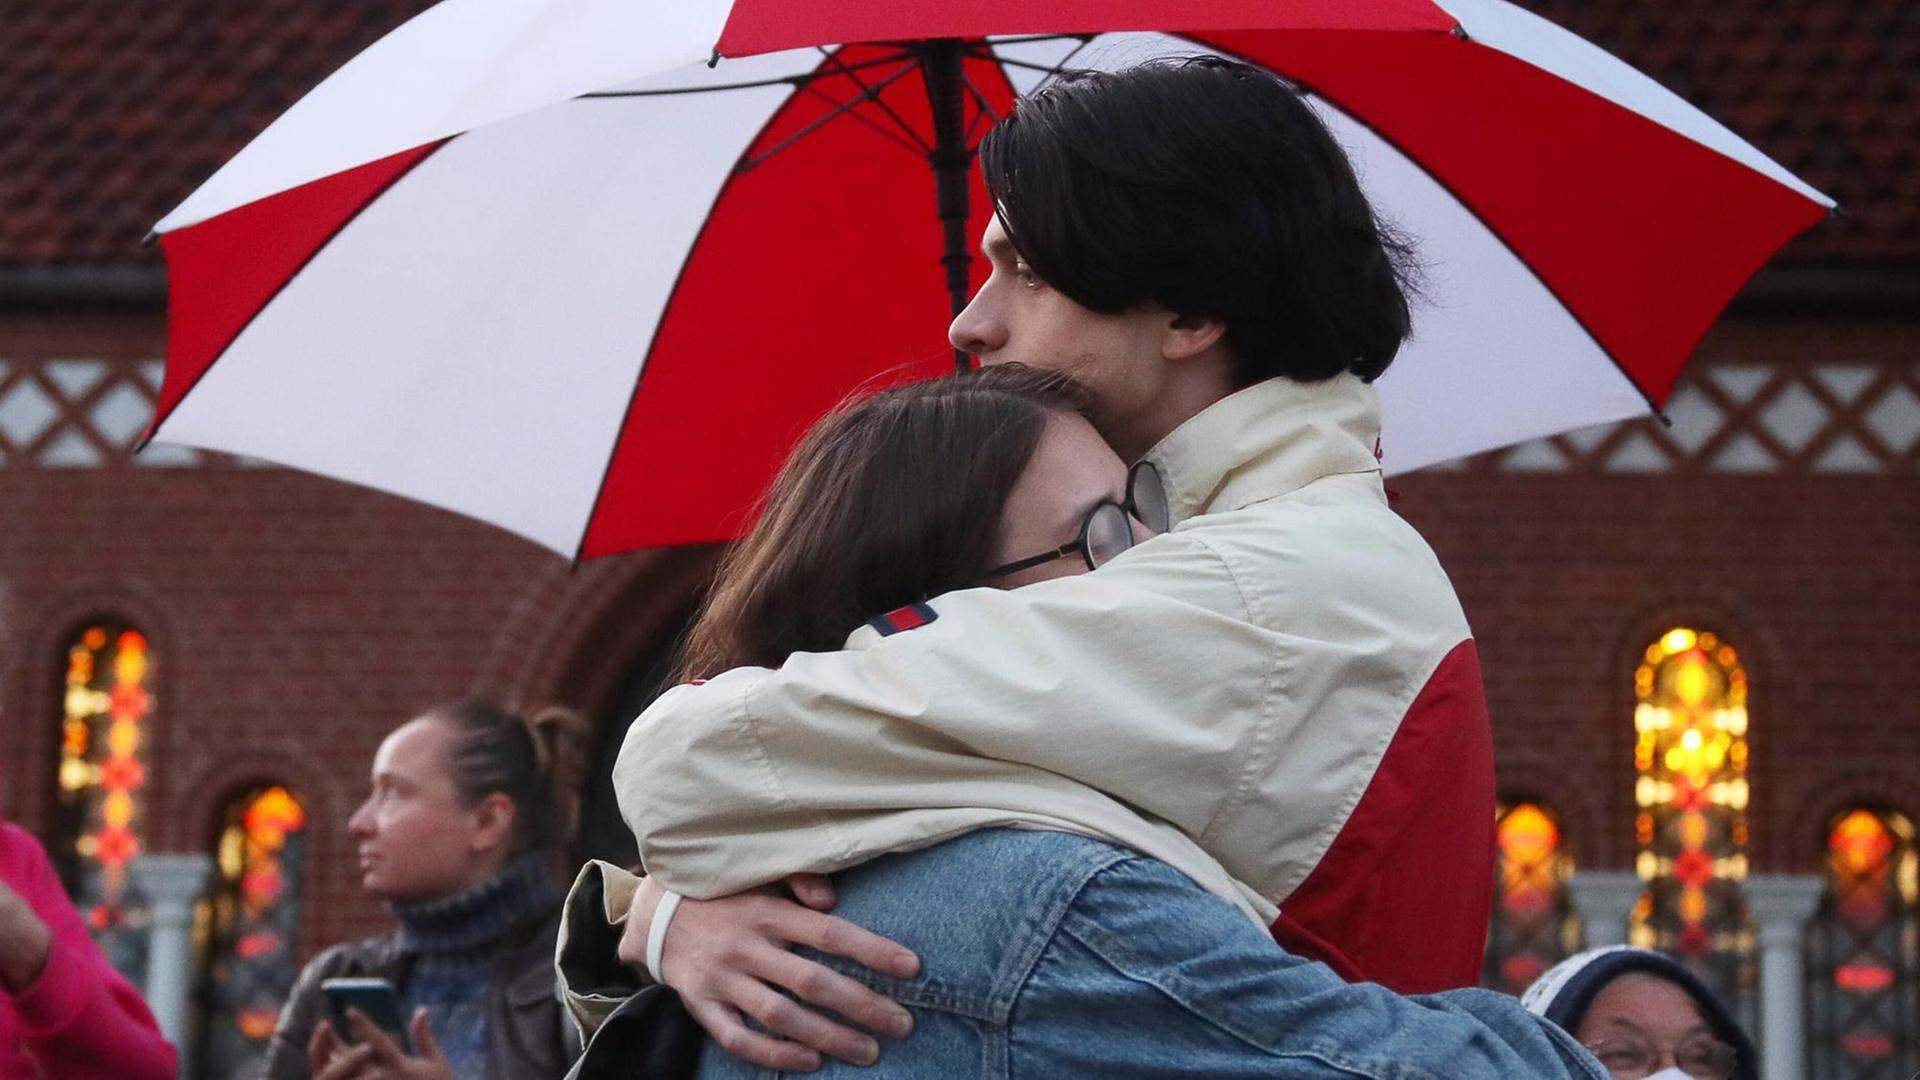 Zwei Demonstranten umarmen sich unter einem rot-weißen Regenschirm.